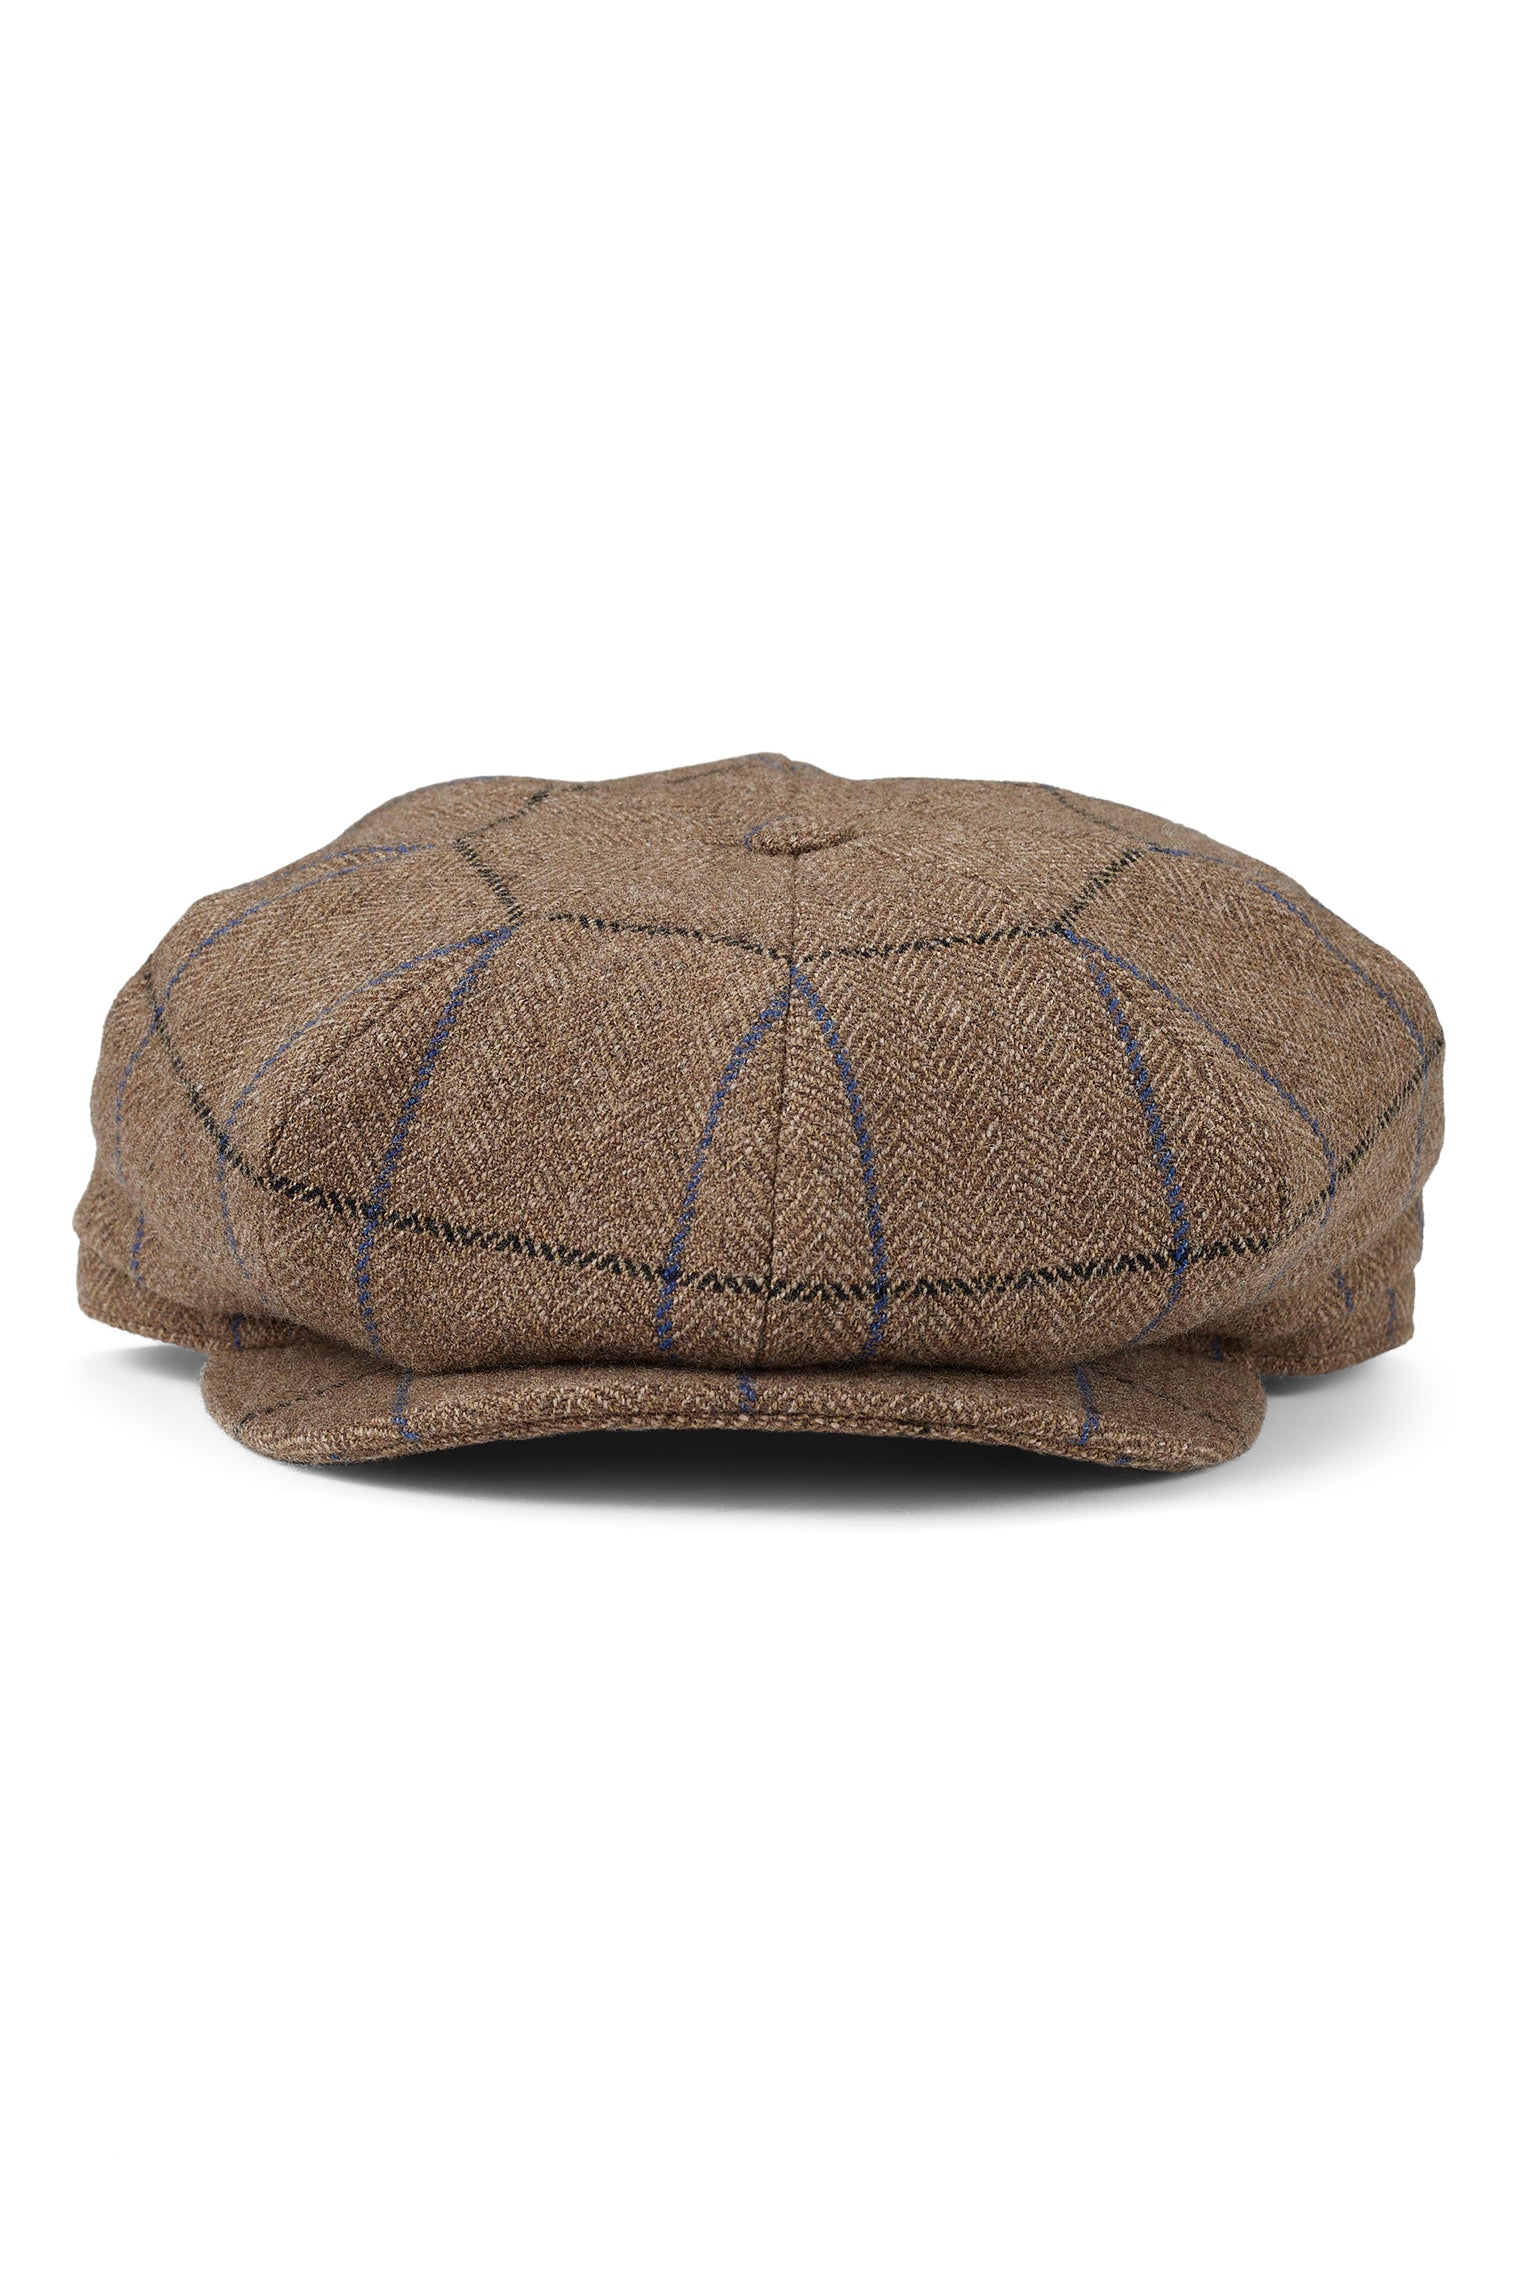 QEST Tremelo Bakerboy Cap - New Season Men's Hats - Lock & Co. Hatters London UK